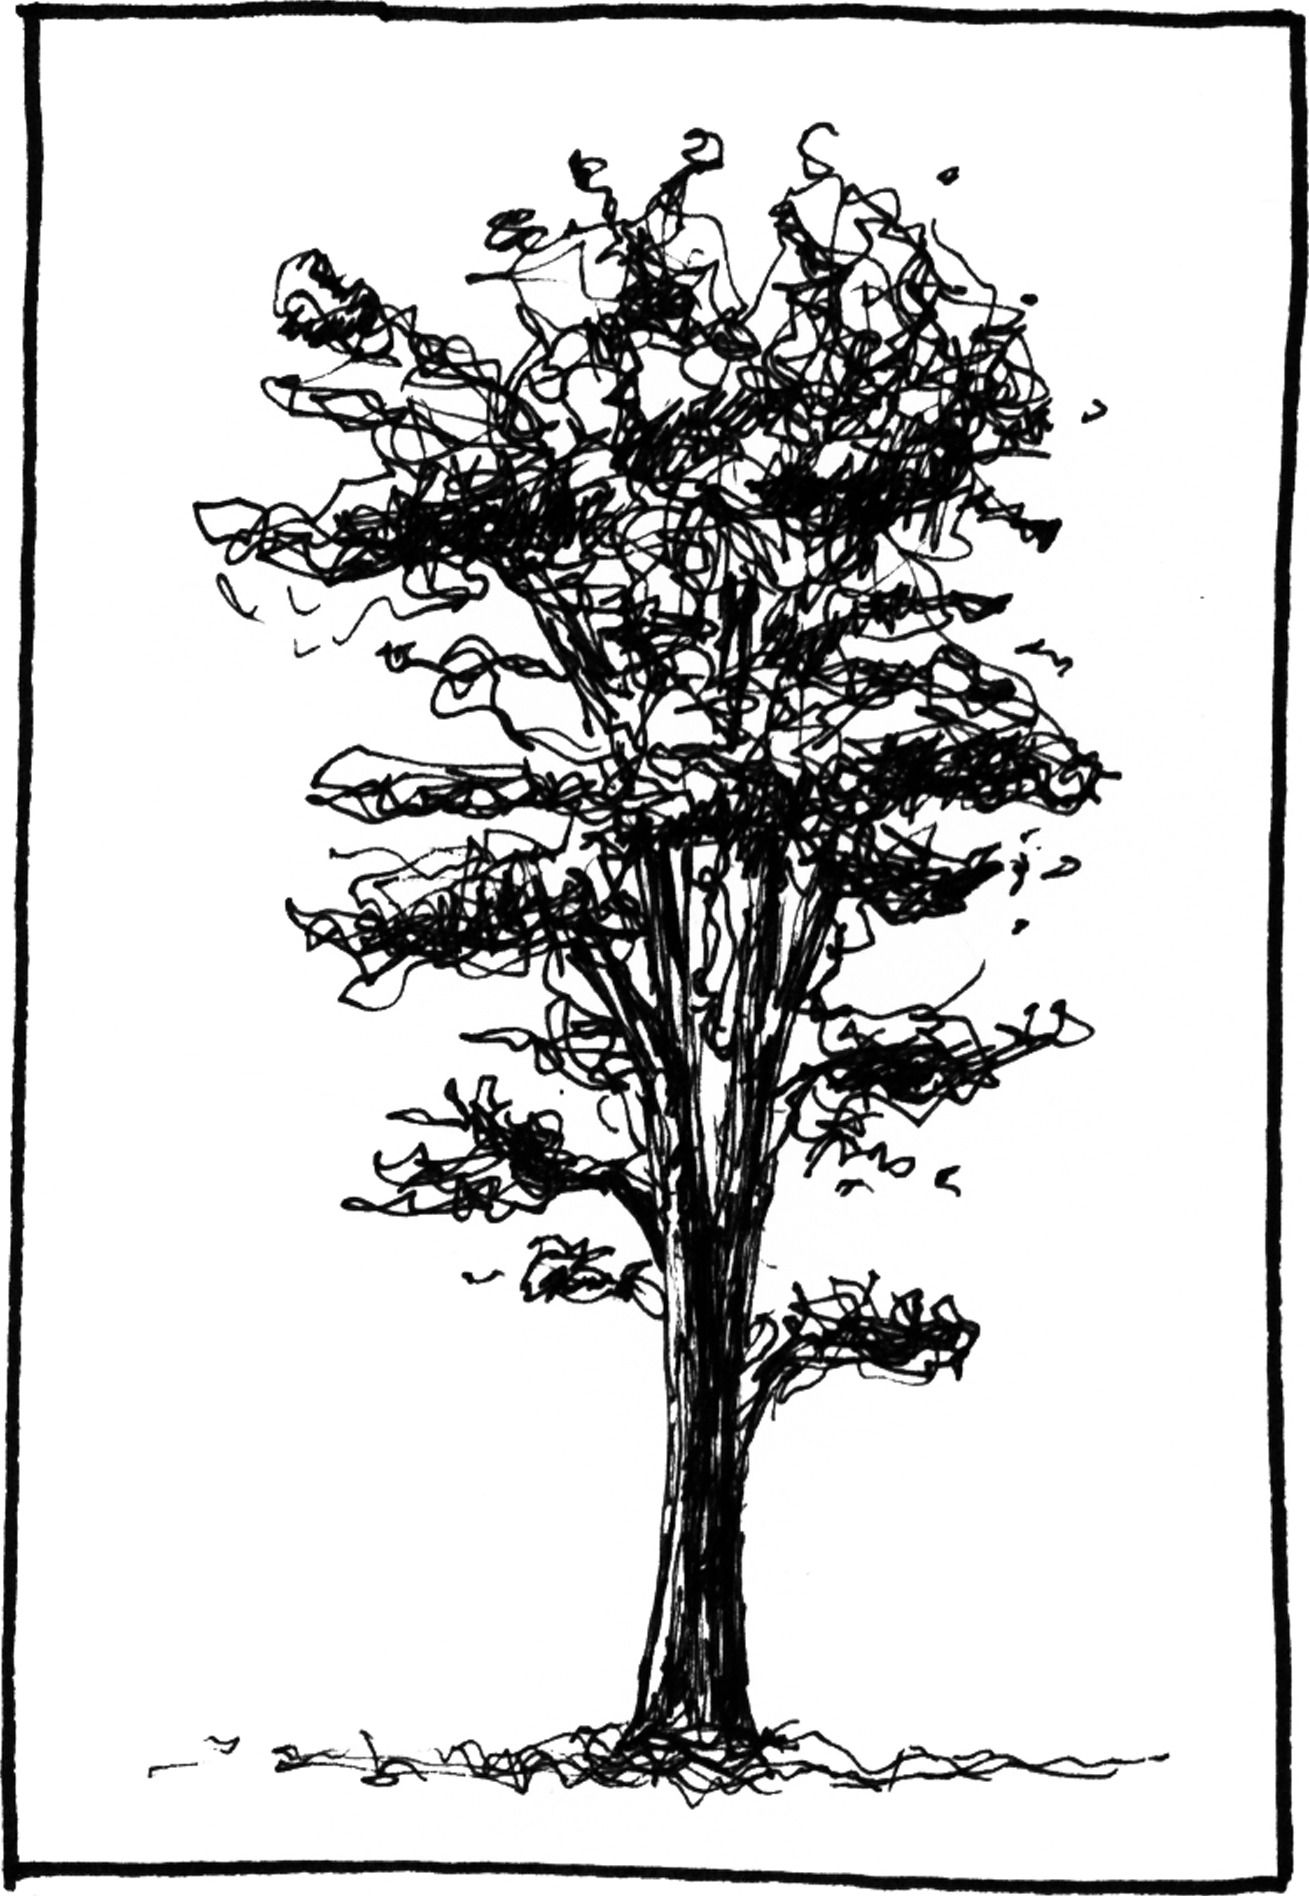 Pinus contorta - Drawing by Camillo Visini